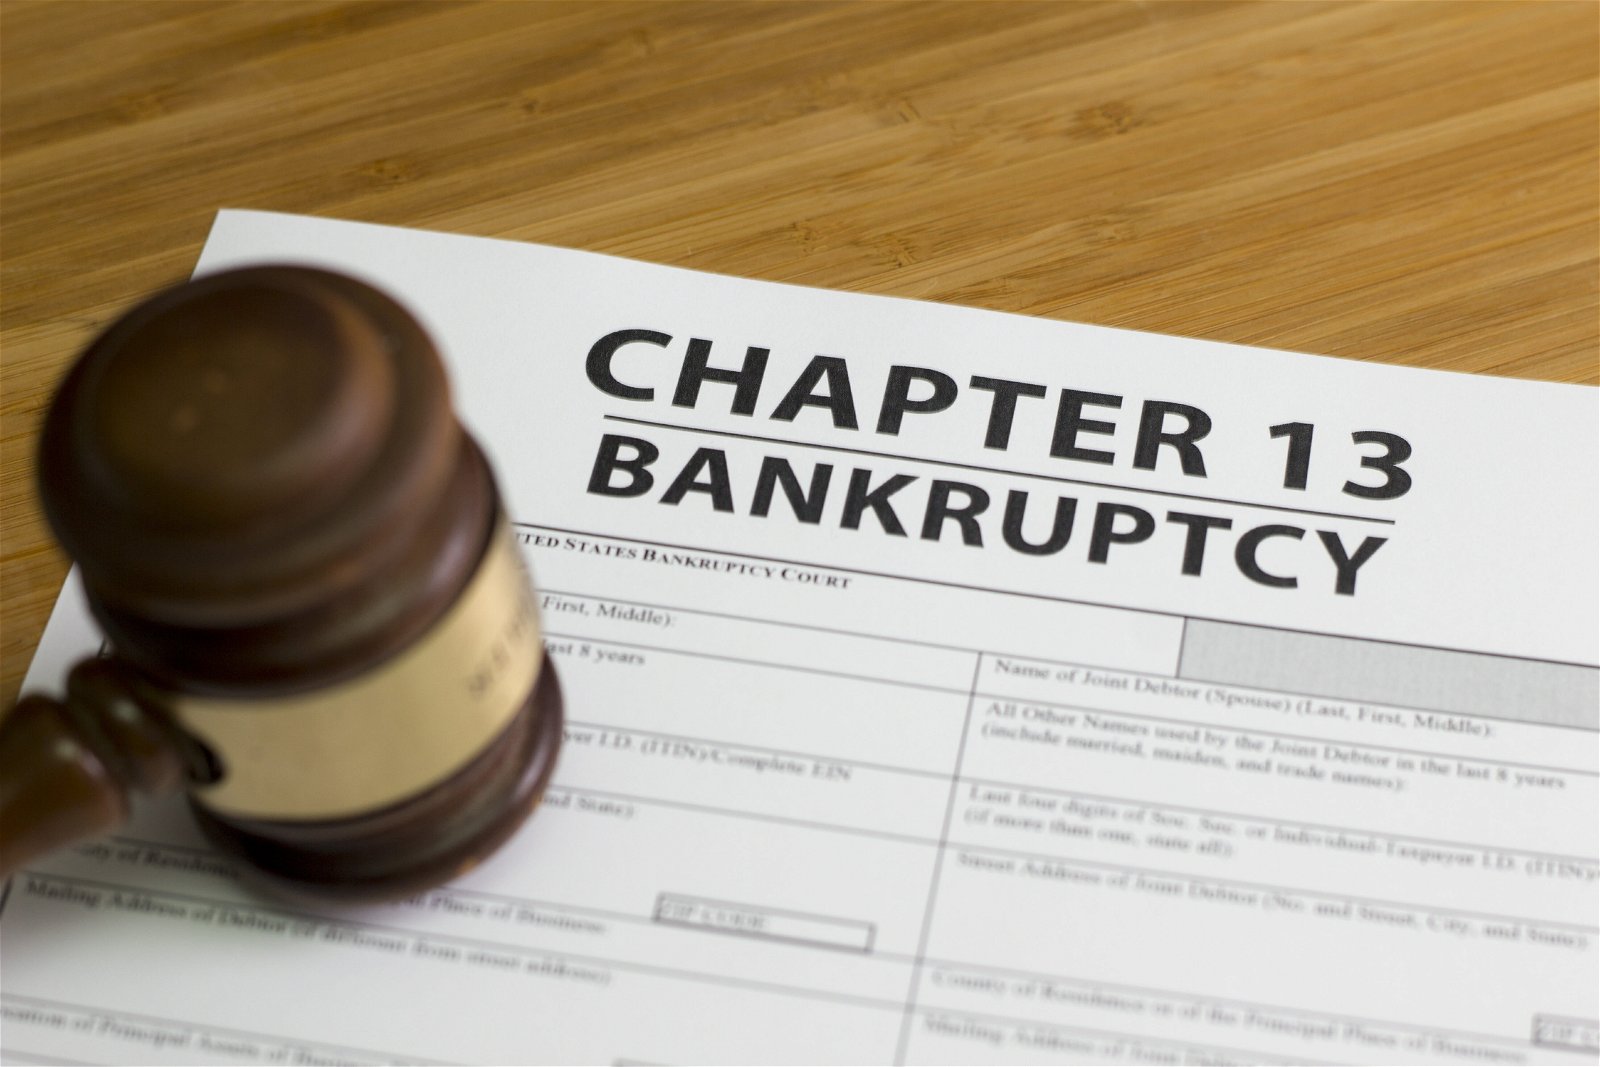 Bankrutpcy attorney chapter 13, 